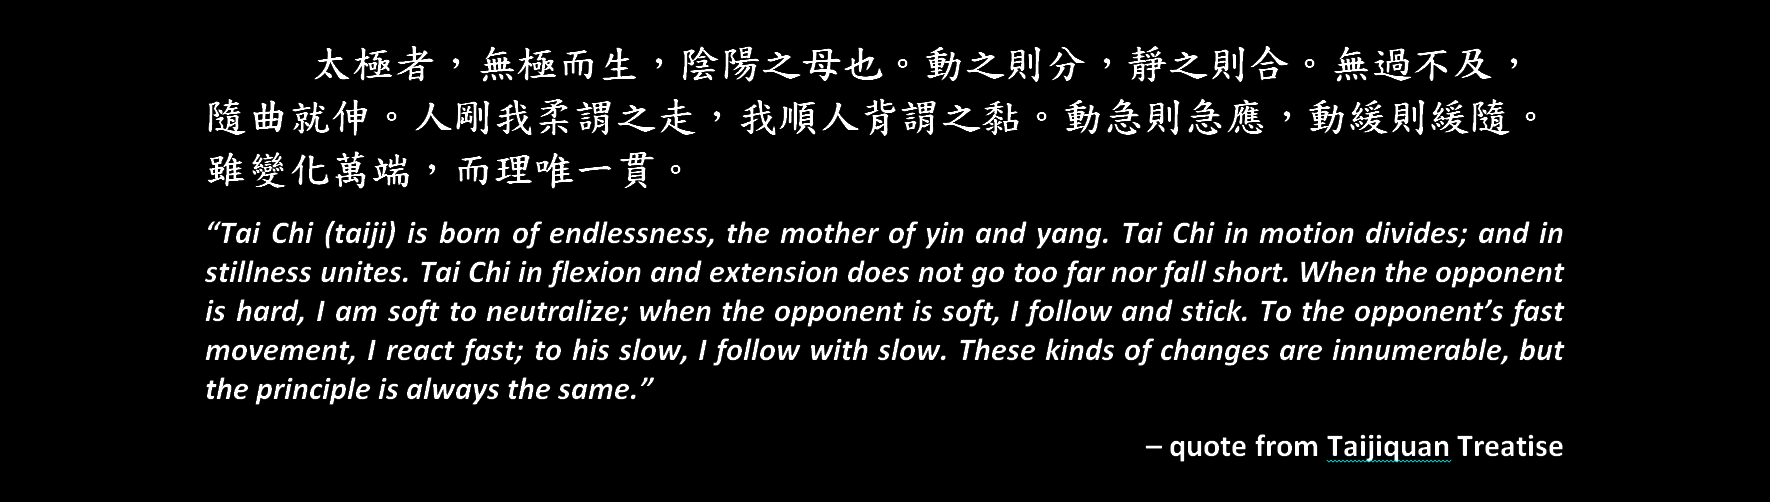 The Essence of Taiji Qigong The Internal Foundation of Taijiquan